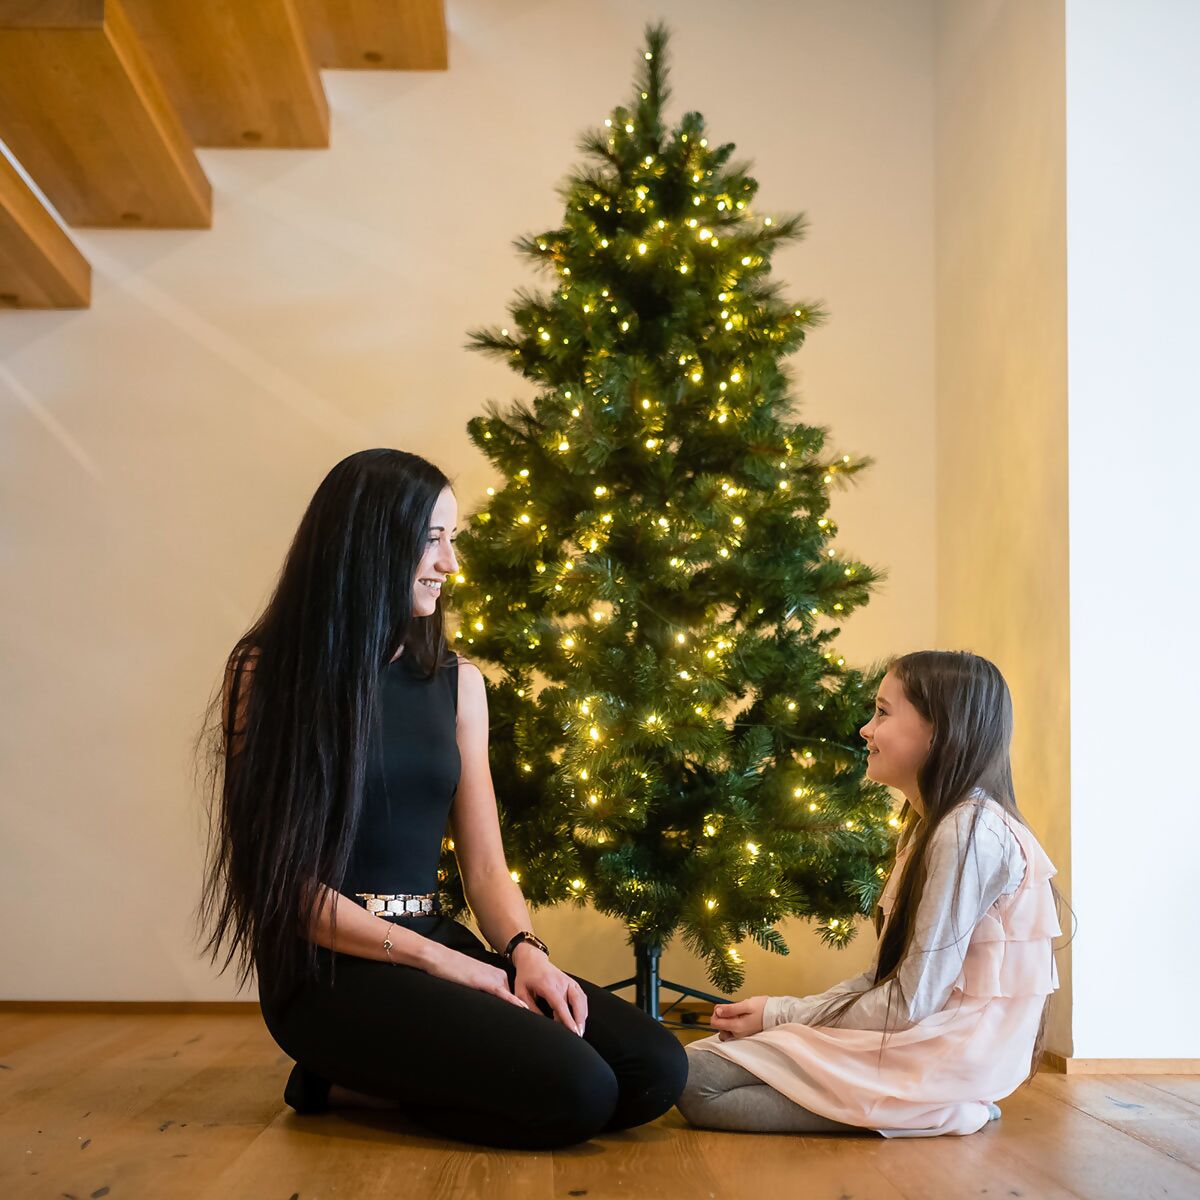 Lichterketten am Weihnachtsbaum: Sicher und besinnlich